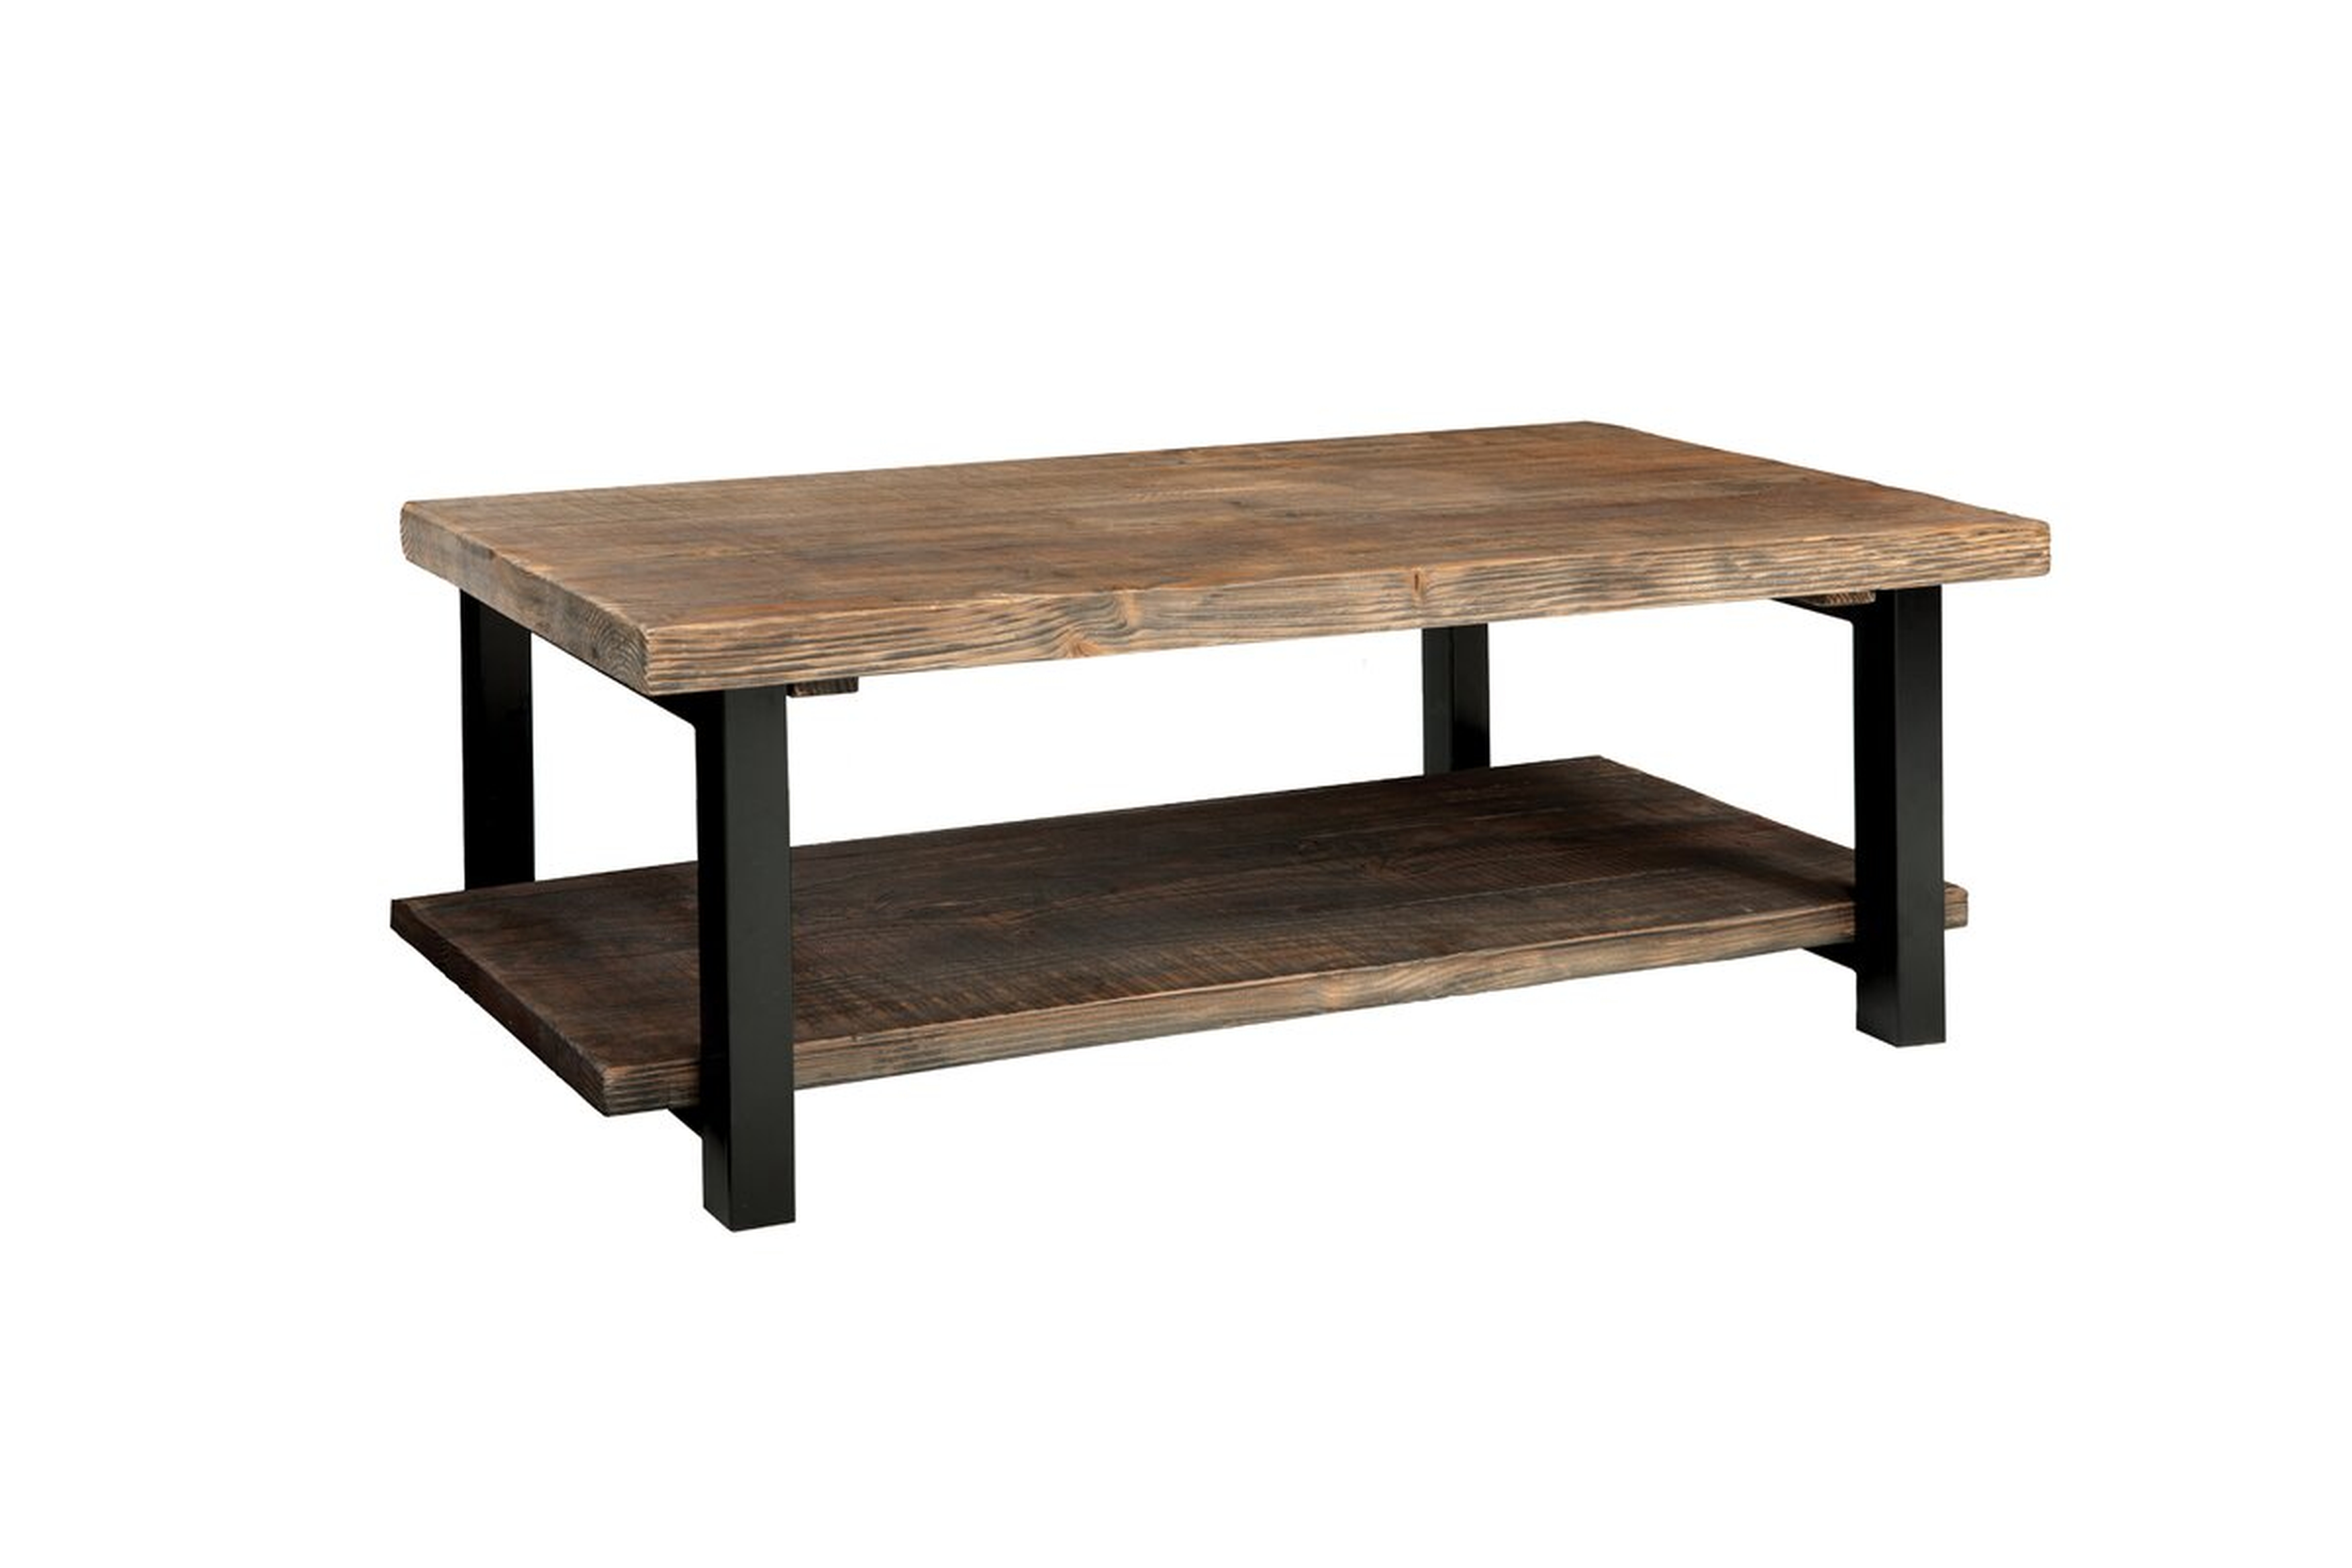 Honore 42" Wood/Metal Coffee Table - Birch Lane